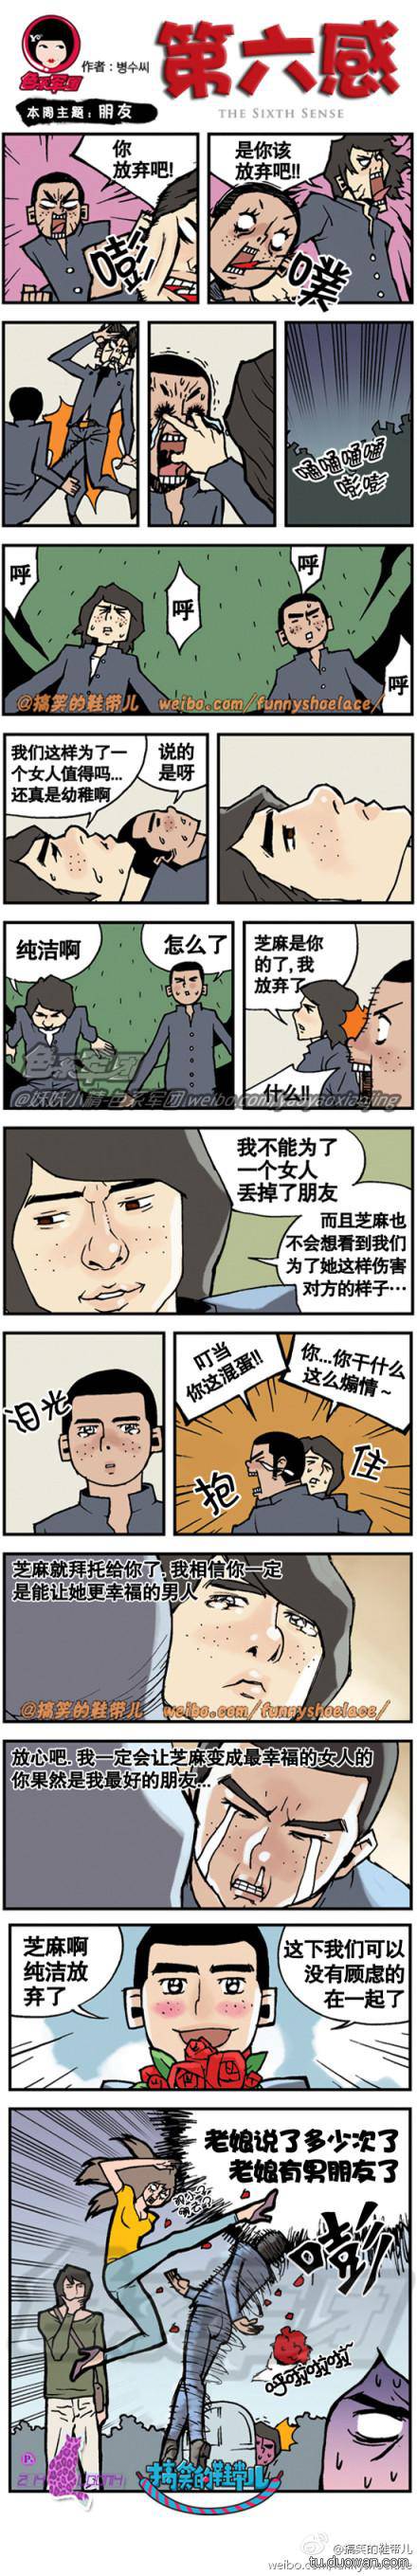 邪恶漫画爆笑囧图第68刊：说明书